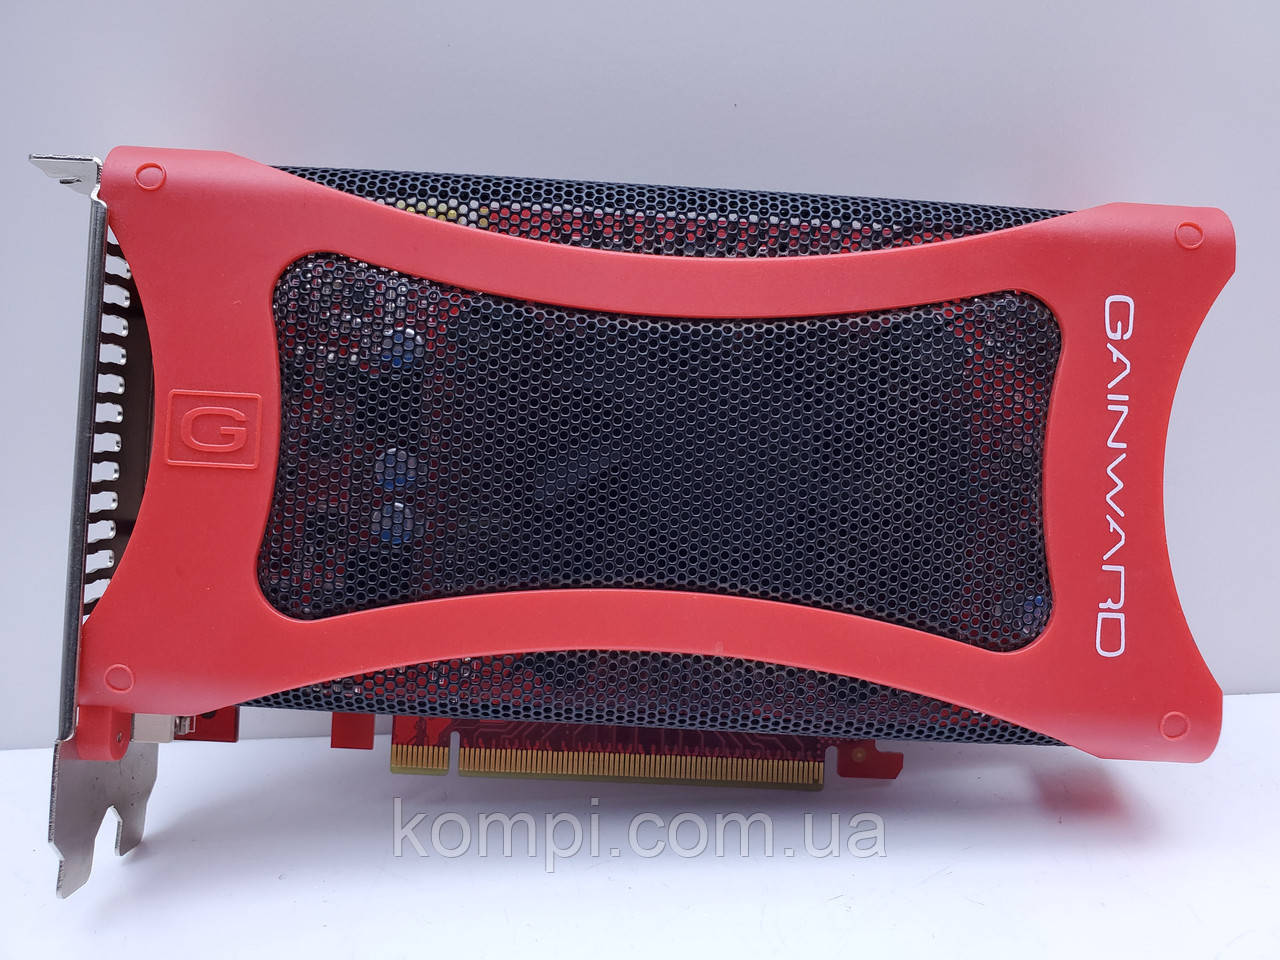 Відеокарта Gainward GeForce 9600 GT 512MB (GDDR3,256 Bit,PCI-Ex,Б/у)